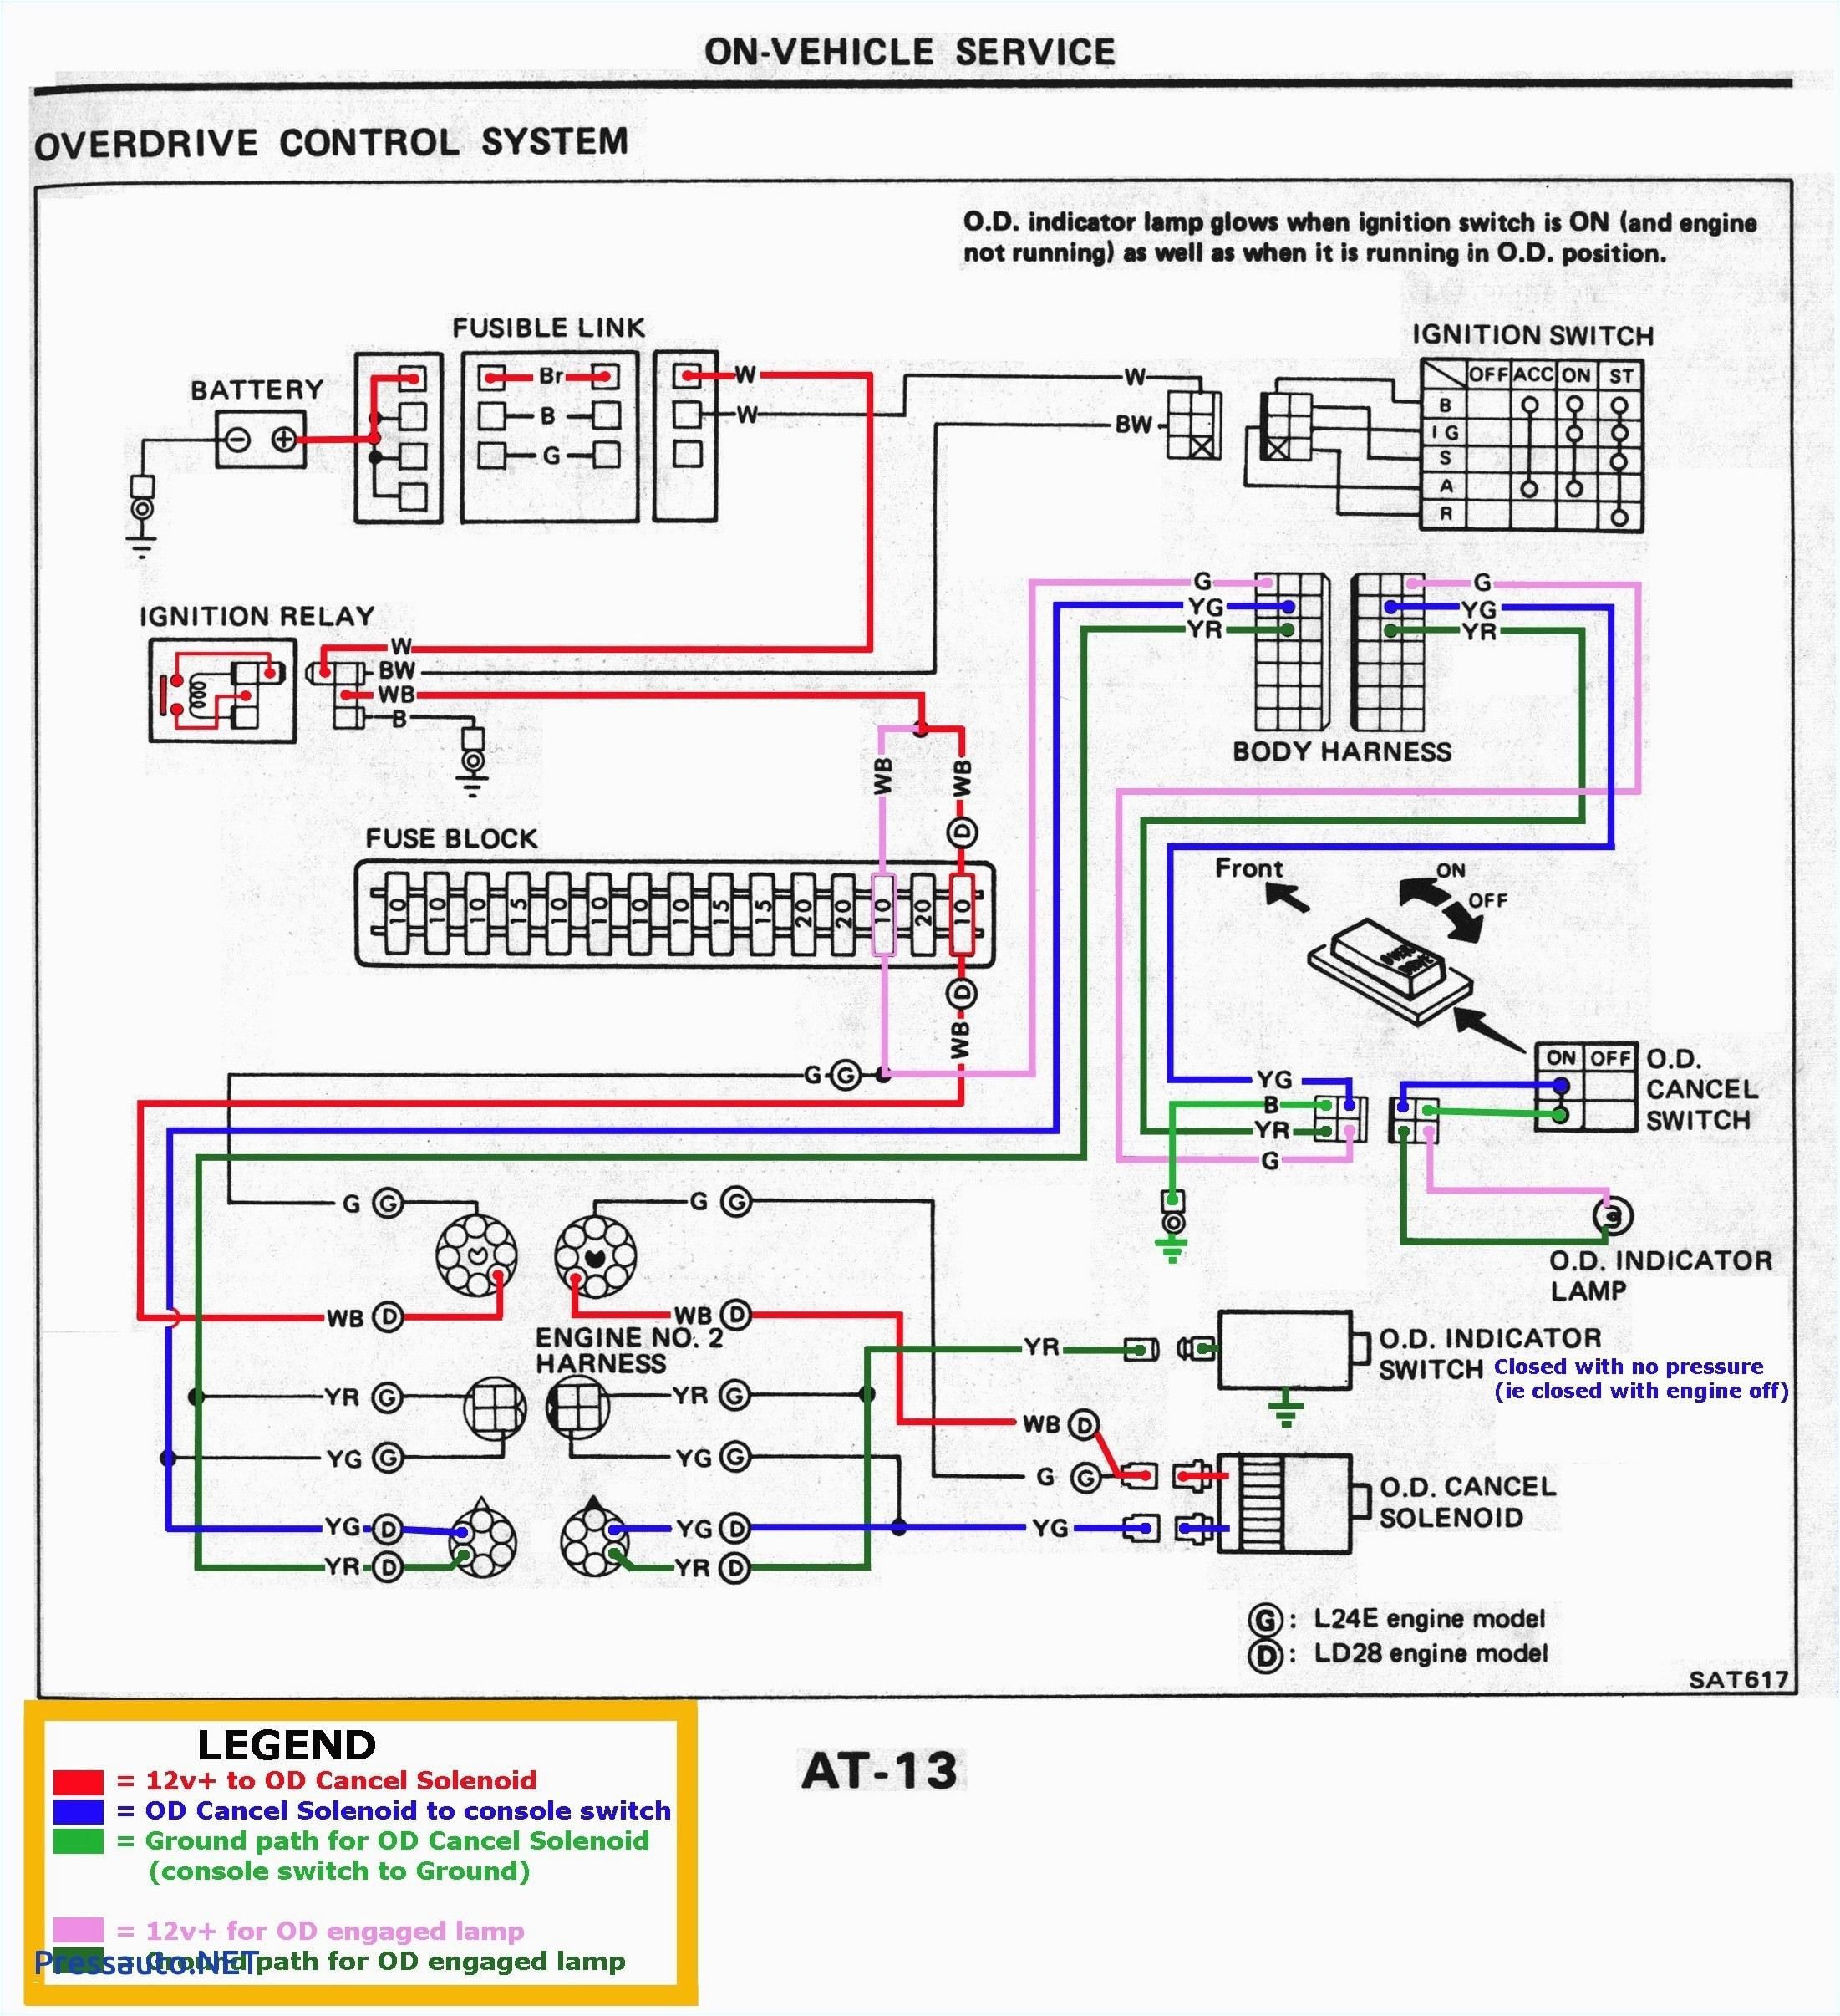 dol motor starter wiring diagram unique siemens star delta starter wiring diagram fresh awesome wiring